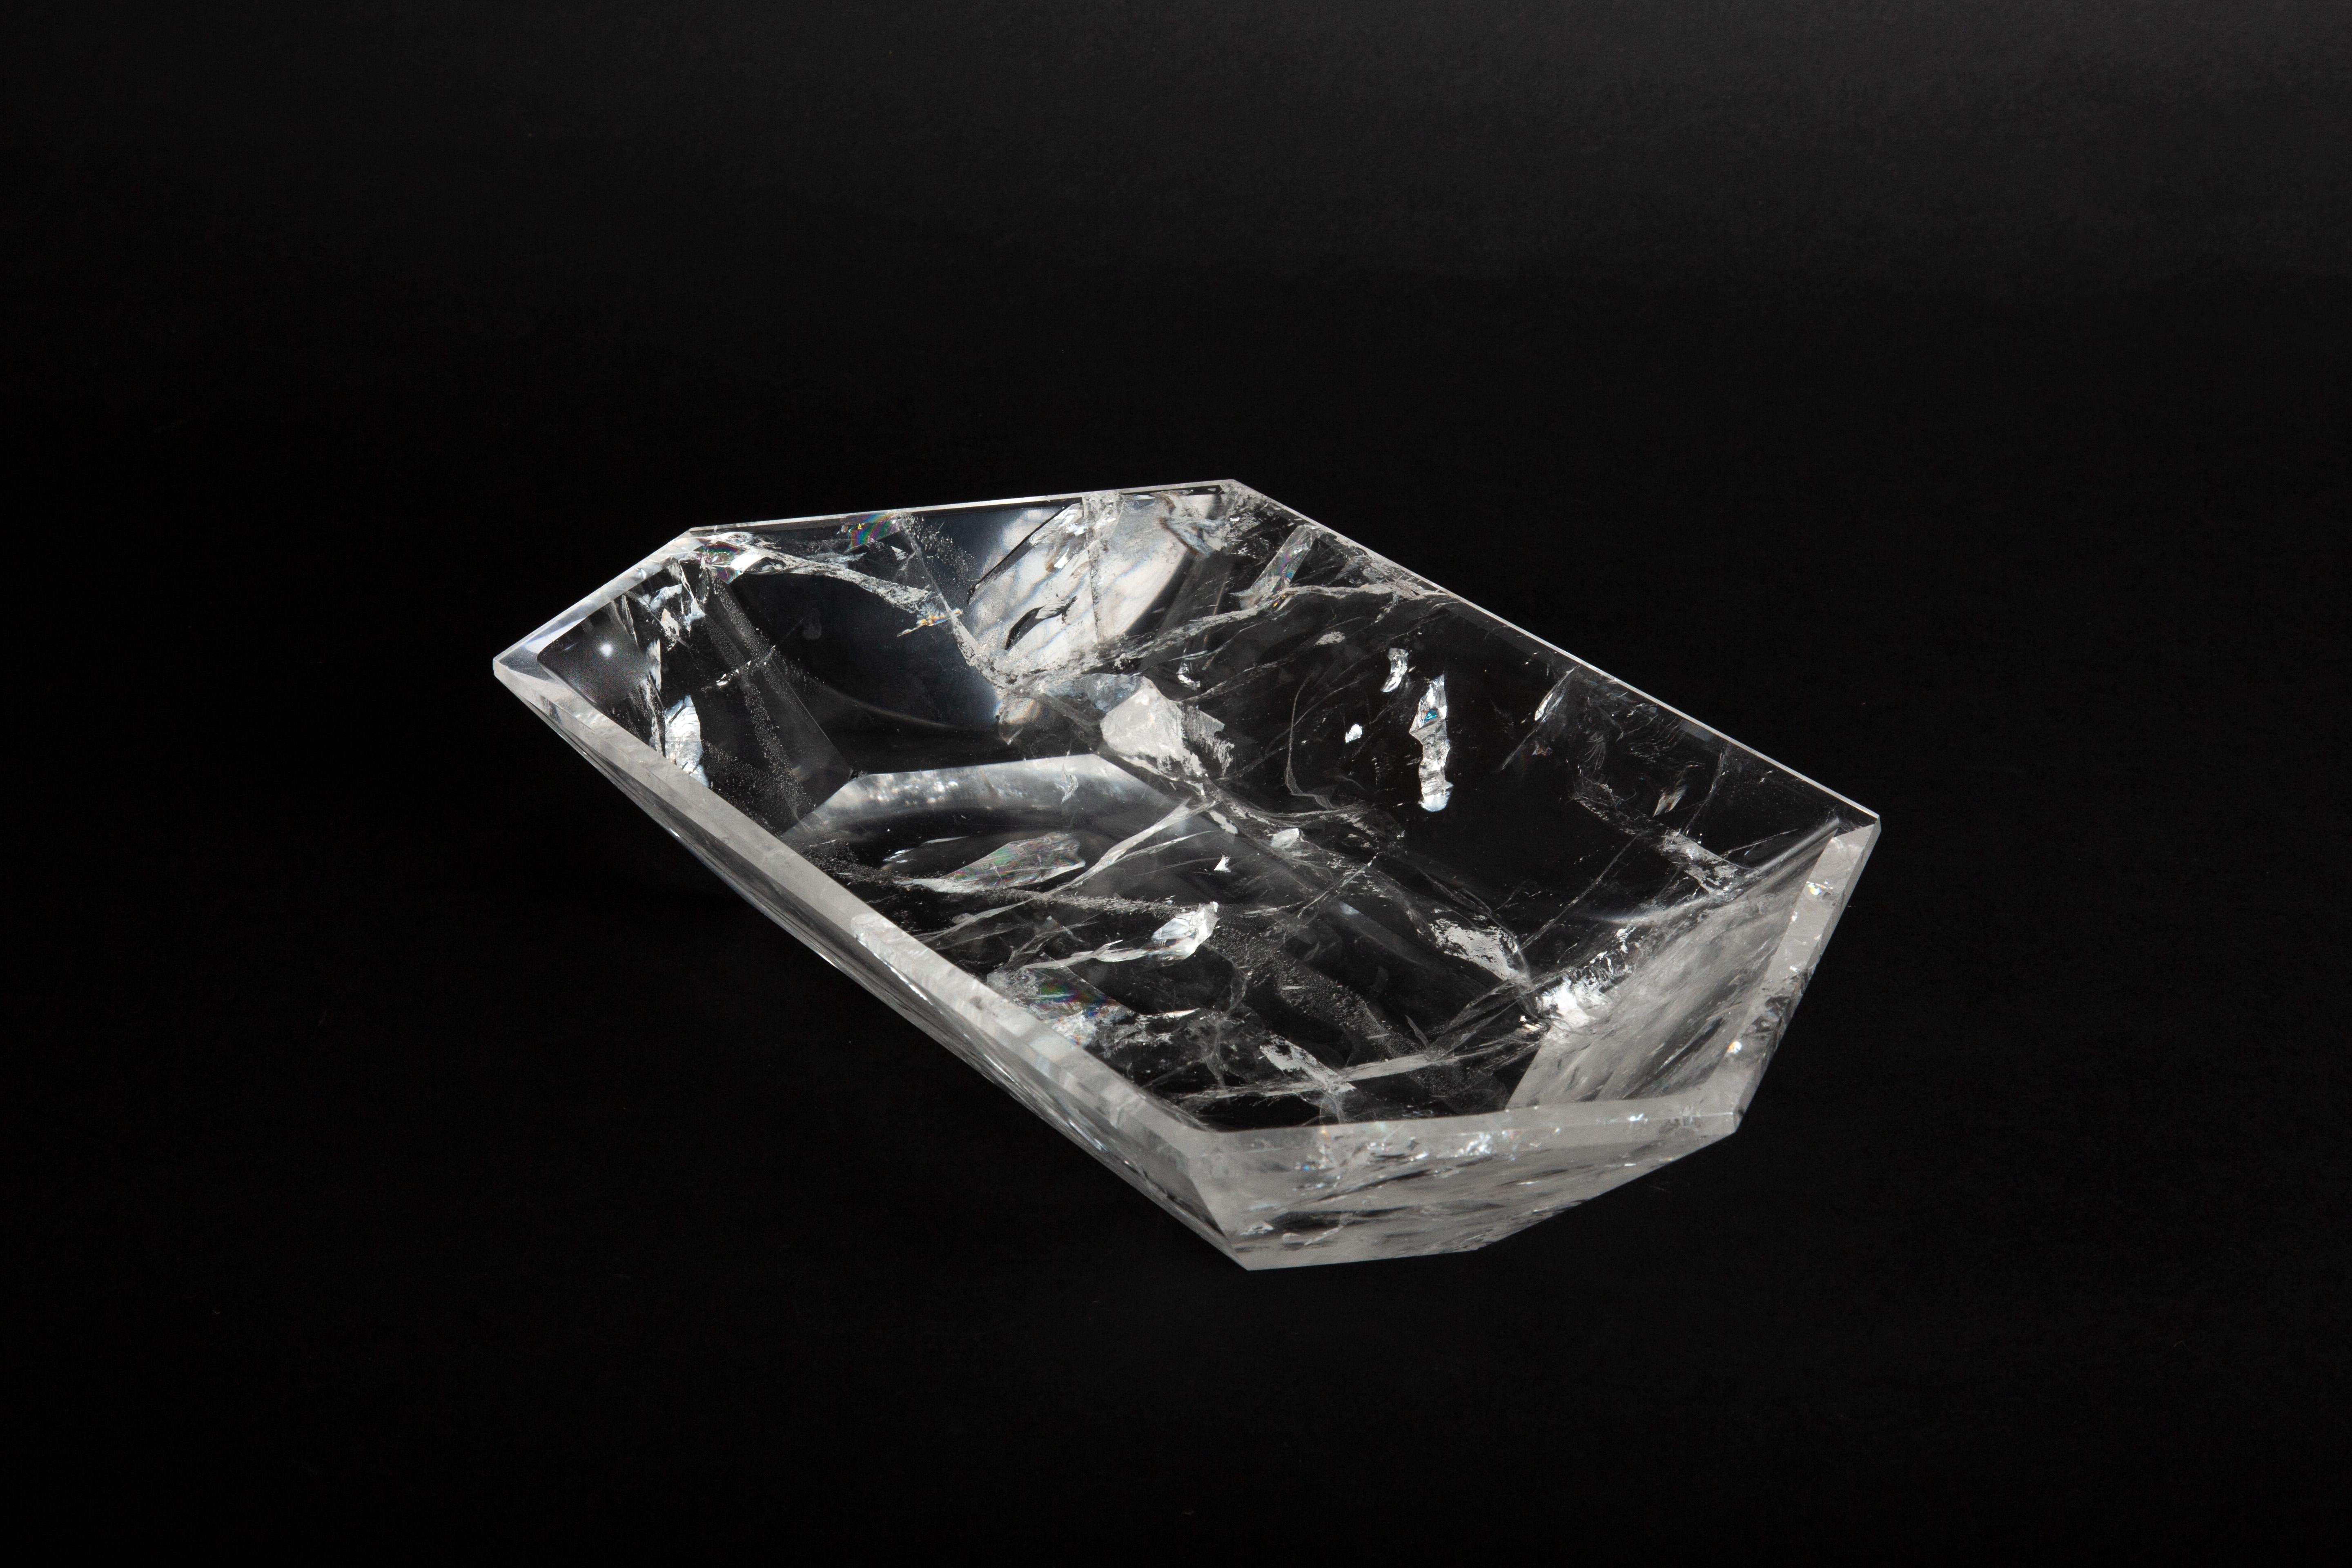 Ce Vide-Poche à facettes en cristal de roche est un chef-d'œuvre d'élégance et de pureté, capturant la beauté naturelle et la sophistication du cristal de roche dans une pièce d'art fonctionnelle. Sculptée et polie de manière experte pour mettre en